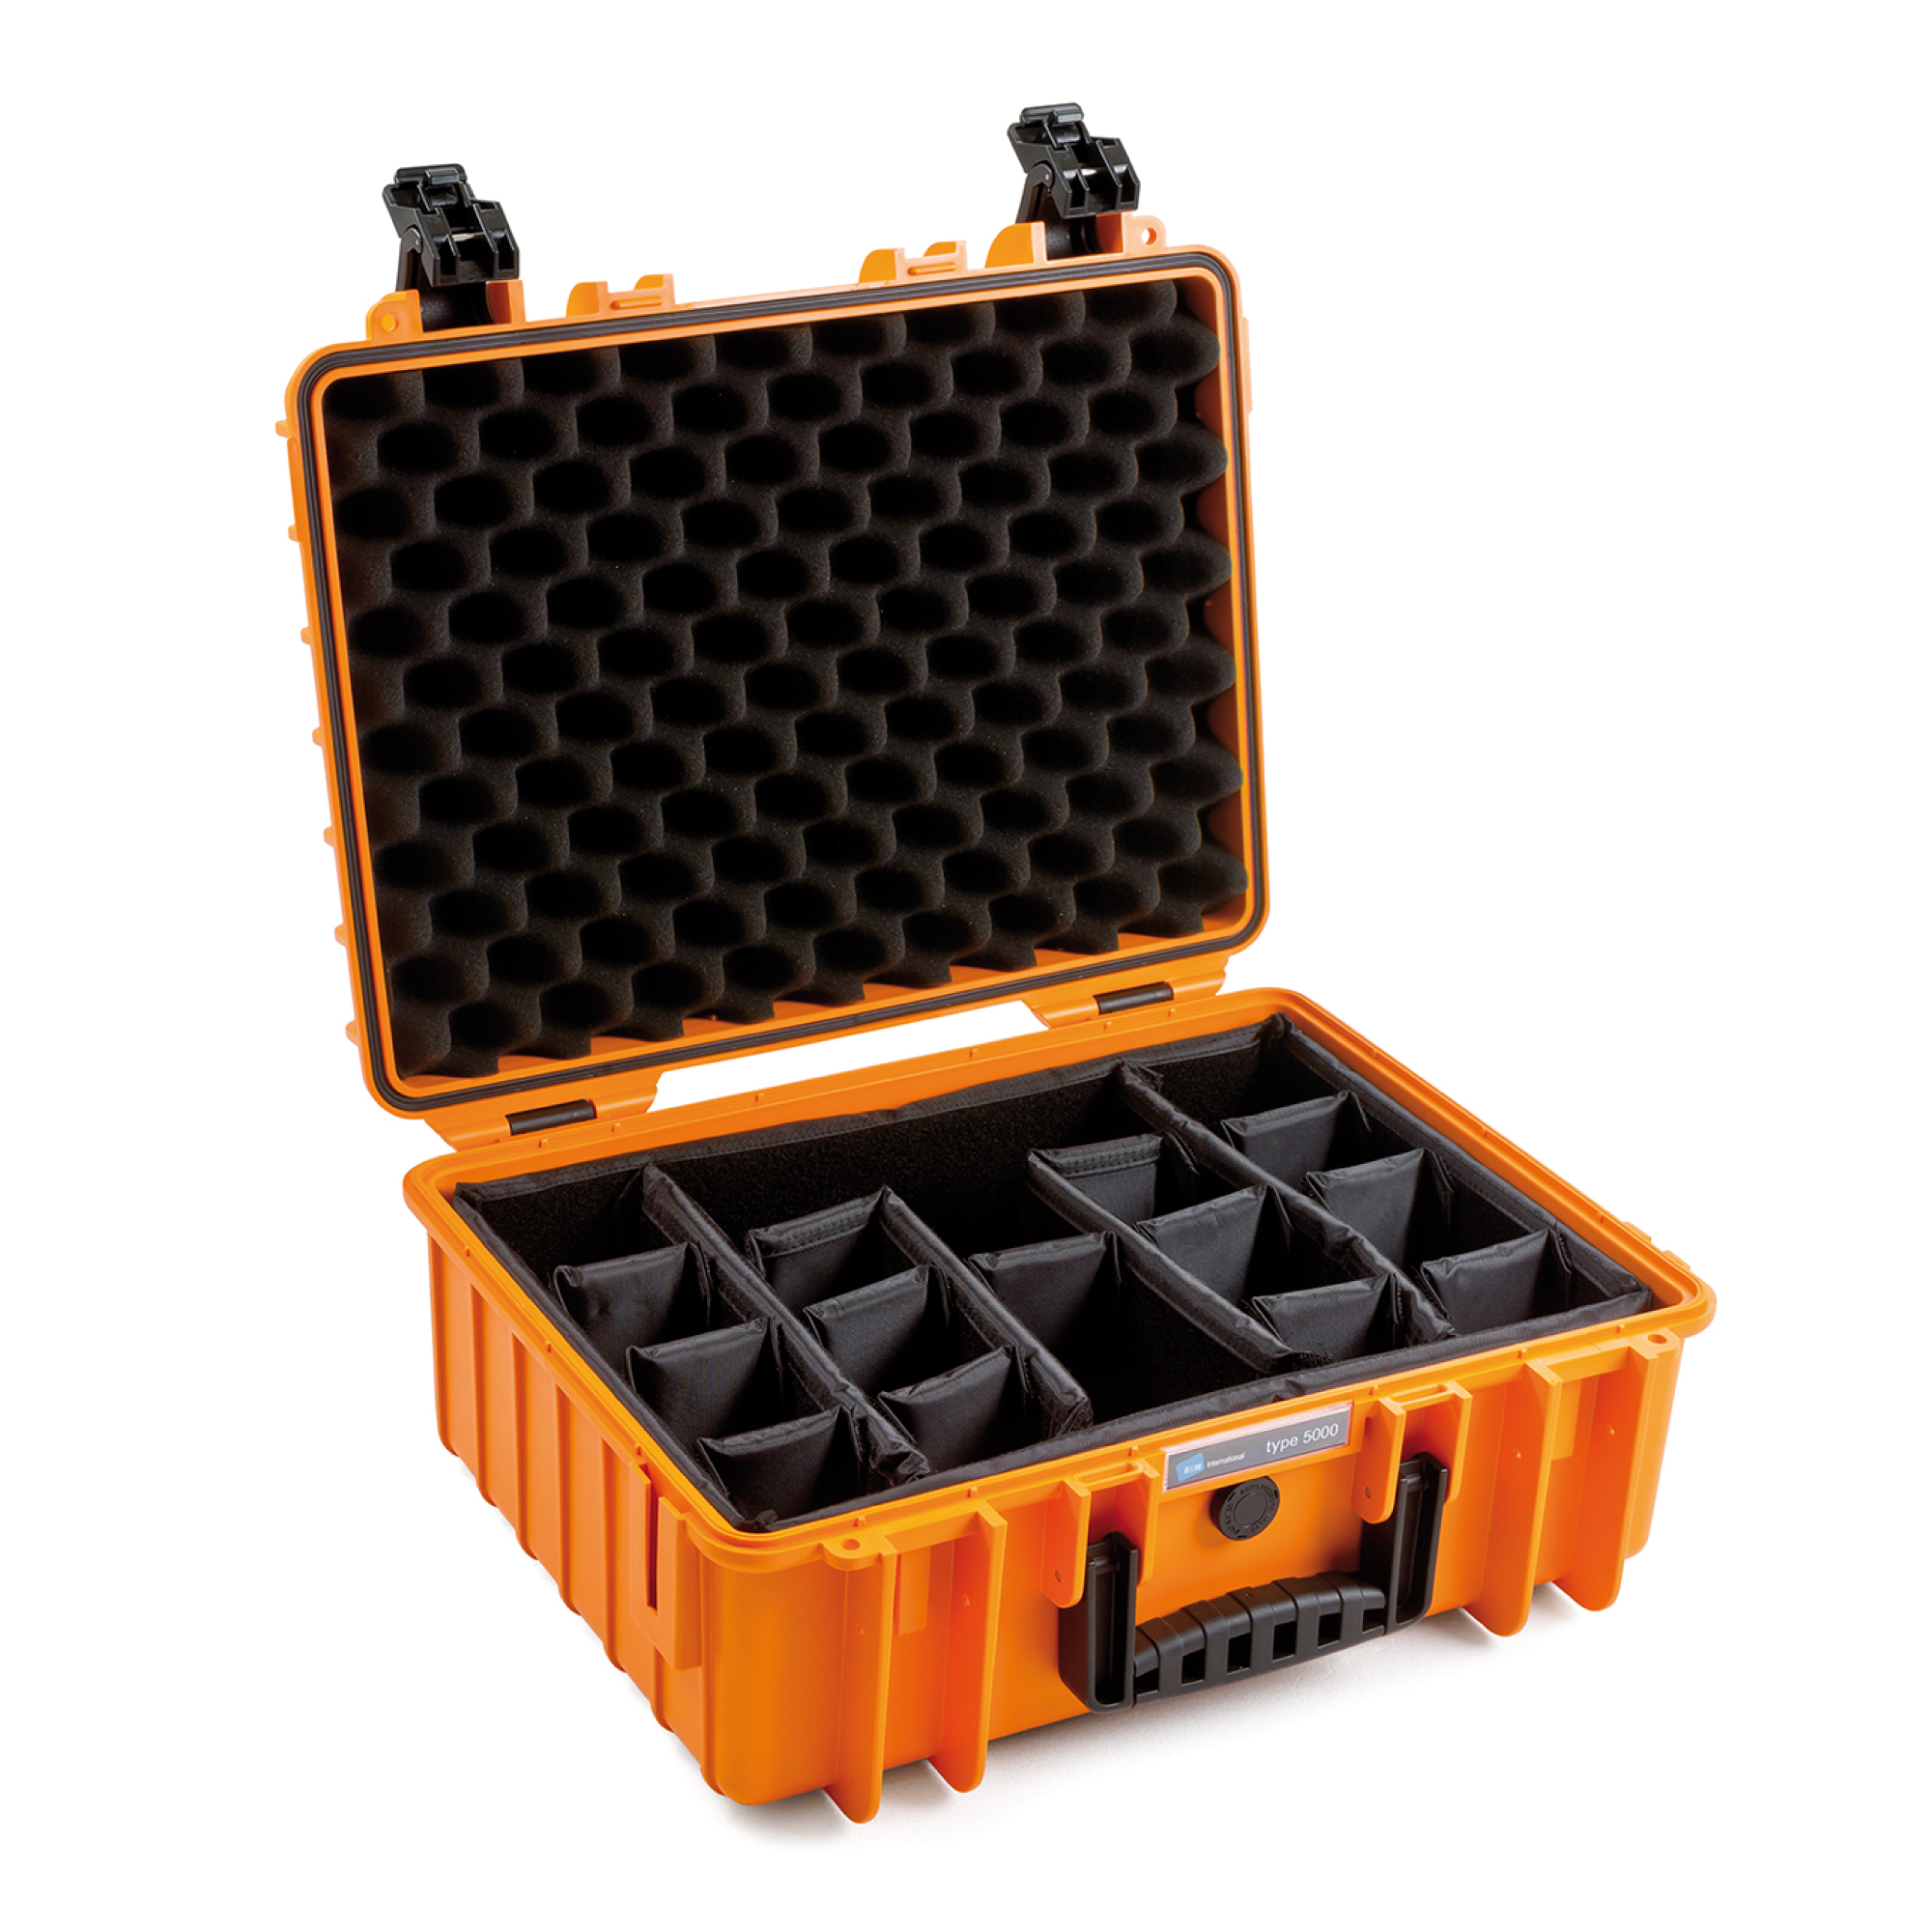 B&W Outdoor Case Typ 5000 orange mit variabler Facheinteilung (RPD) Farbe: orange / Innenausstattung: Facheinteilung (RPD)